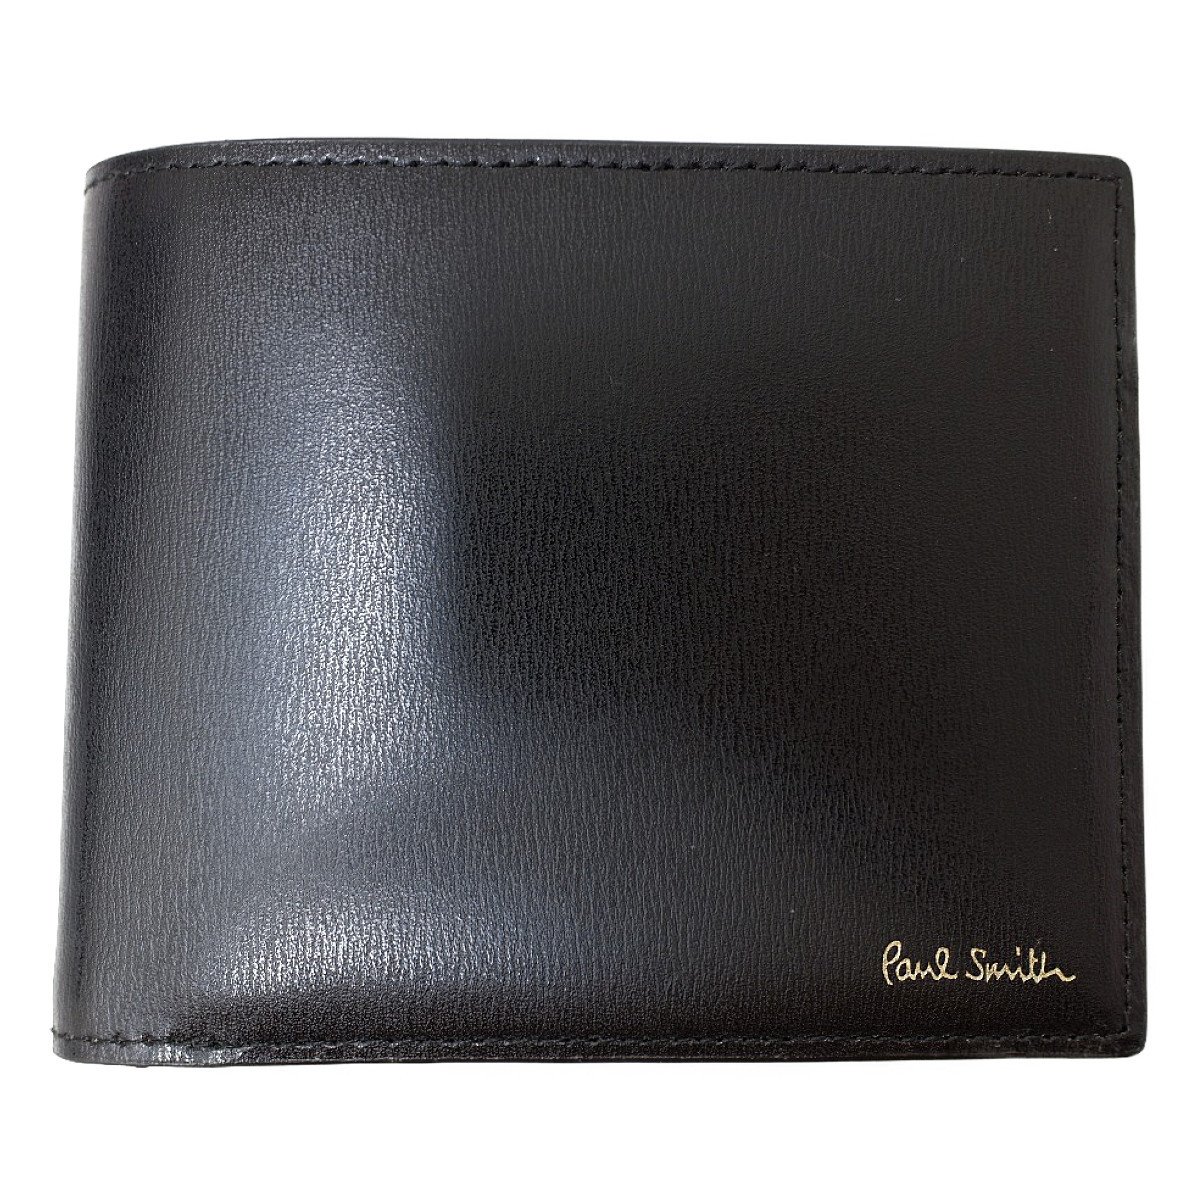 ポールスミスの863-843 P305 シティエンボス 二つ折り財布の買取実績です。